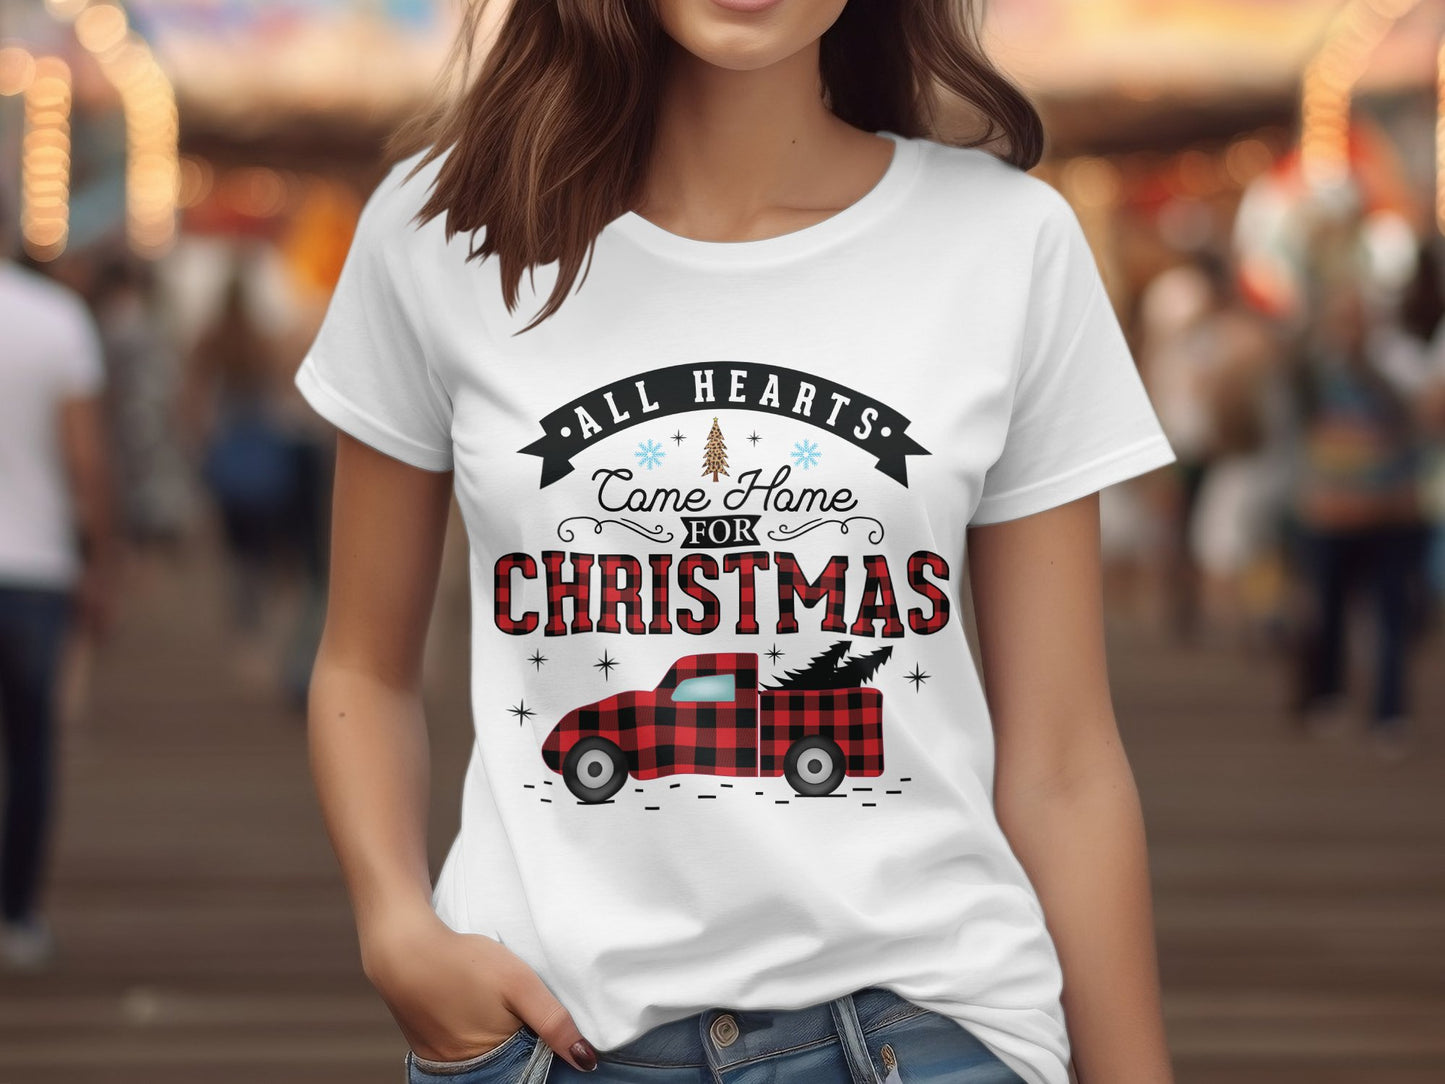 All Hearts Come Home for Christmas (Christmas T-shirt)